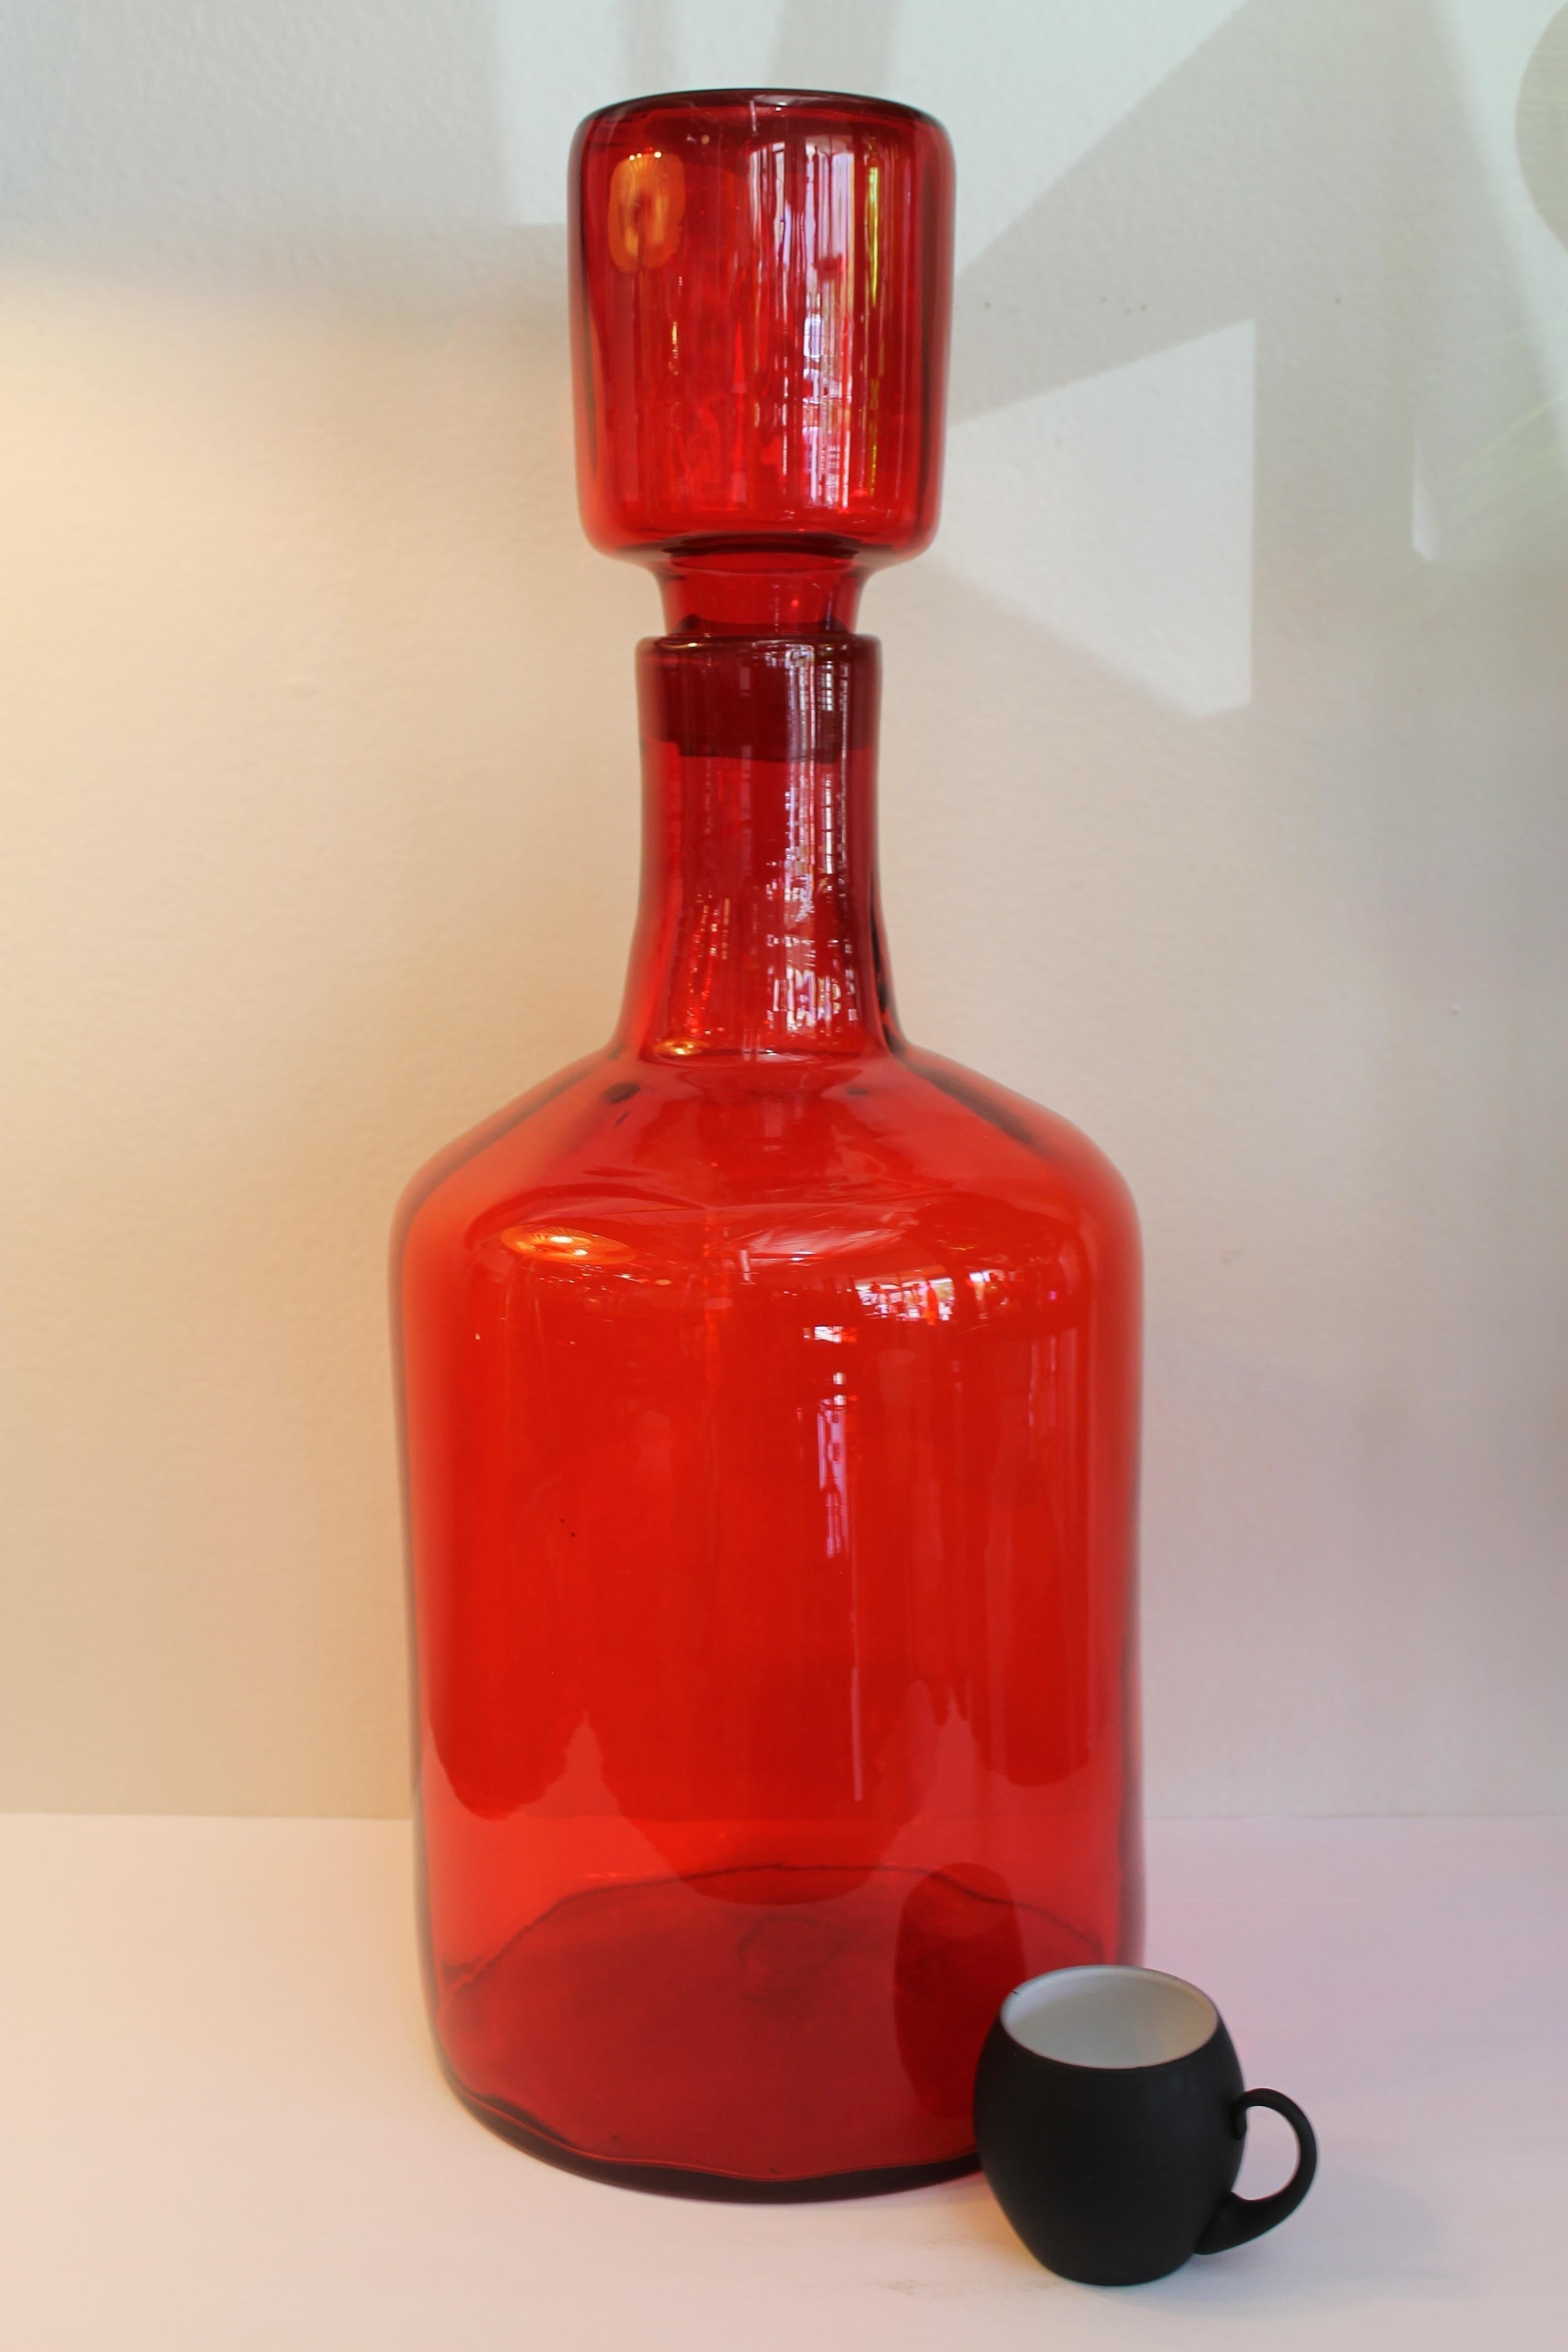 Architektonisches mandarinenfarbenes Blenko-Bodengefäß/Flasche mit Stopfen von Wayne Husted. Die Flasche (ohne Stopfen) ist 18